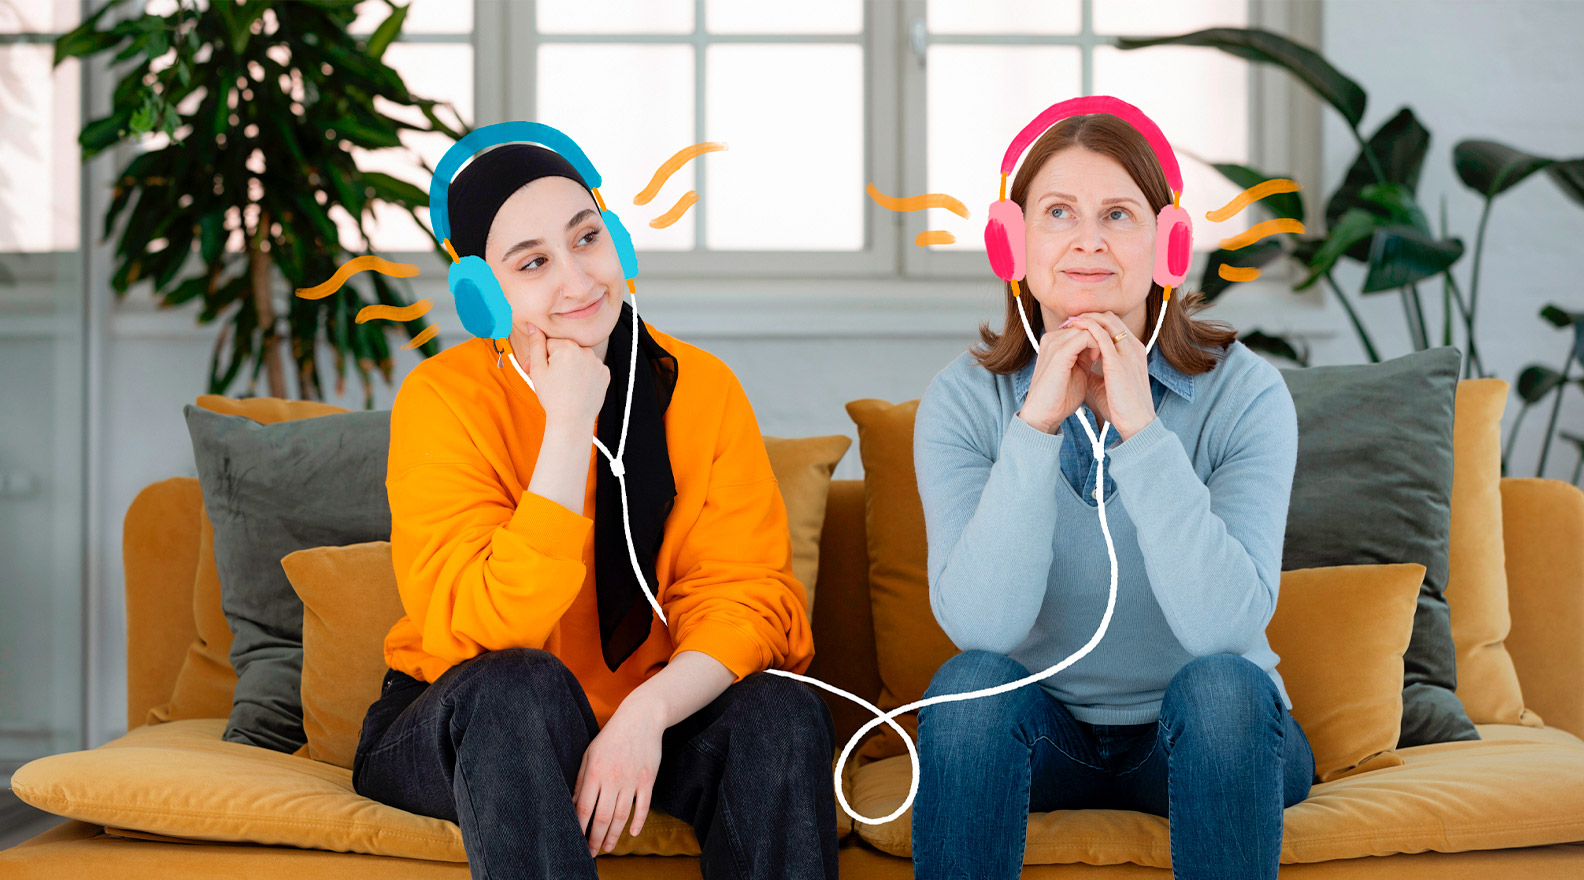 Kaksi naista istuu vierekkäin sohvalla kuunnellen. Naisille on lisätty piirroskuvituksen muodossa kuulokkeet.